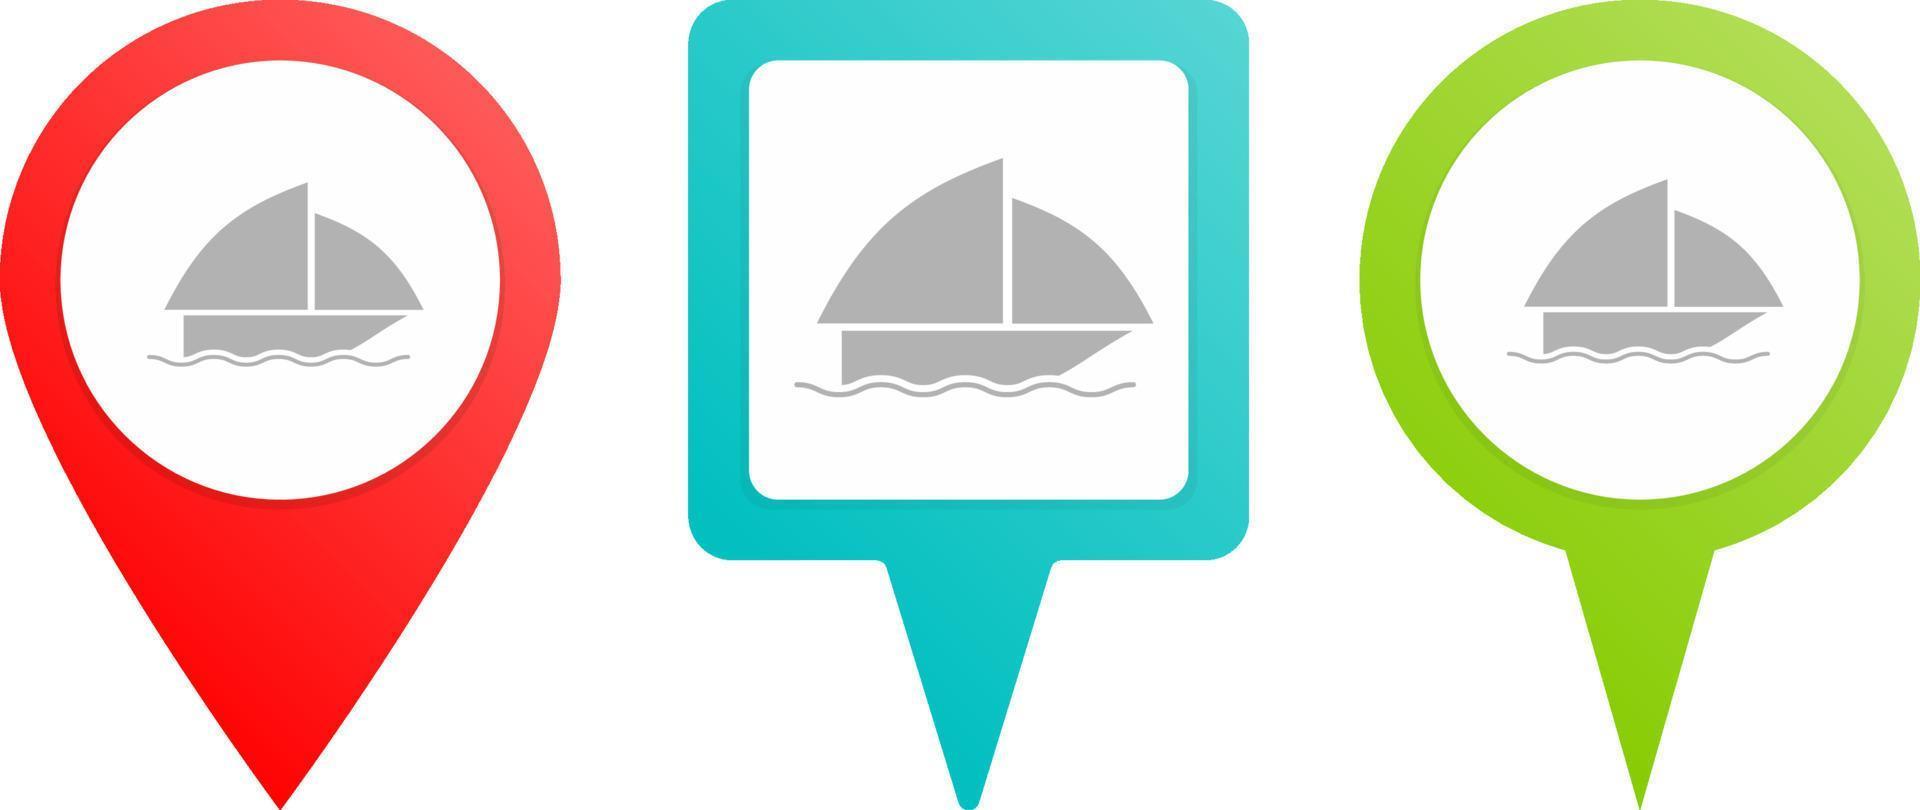 barca perno icona. multicolore perno vettore icona, diverso genere carta geografica e navigazione punto.